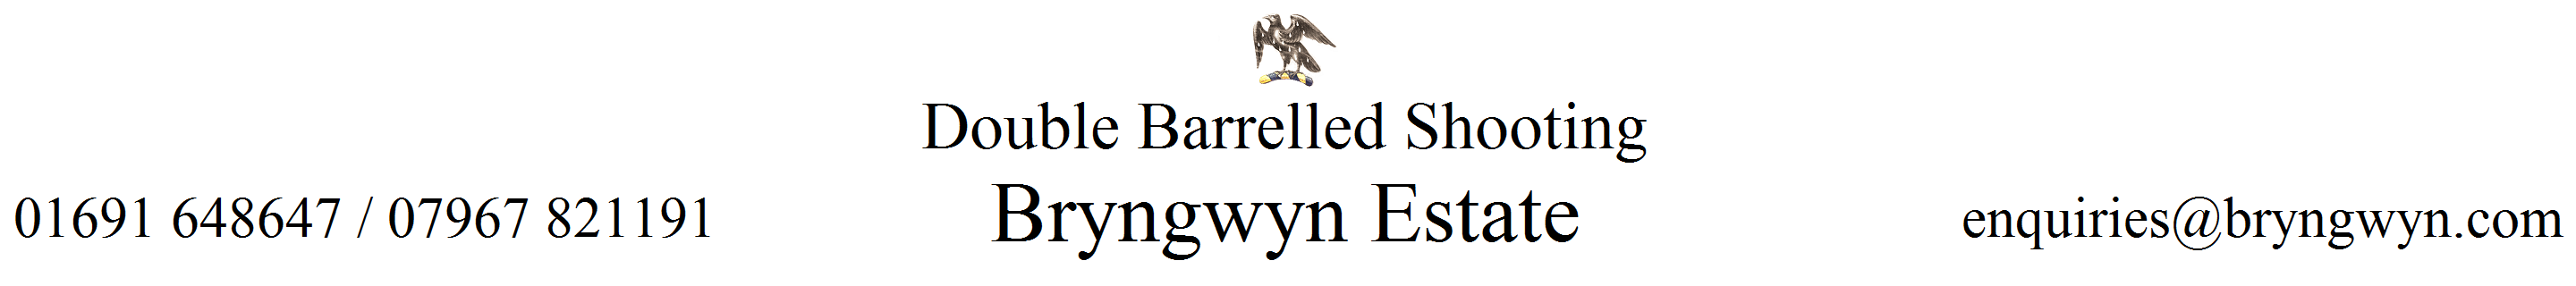 bryngwyn logo